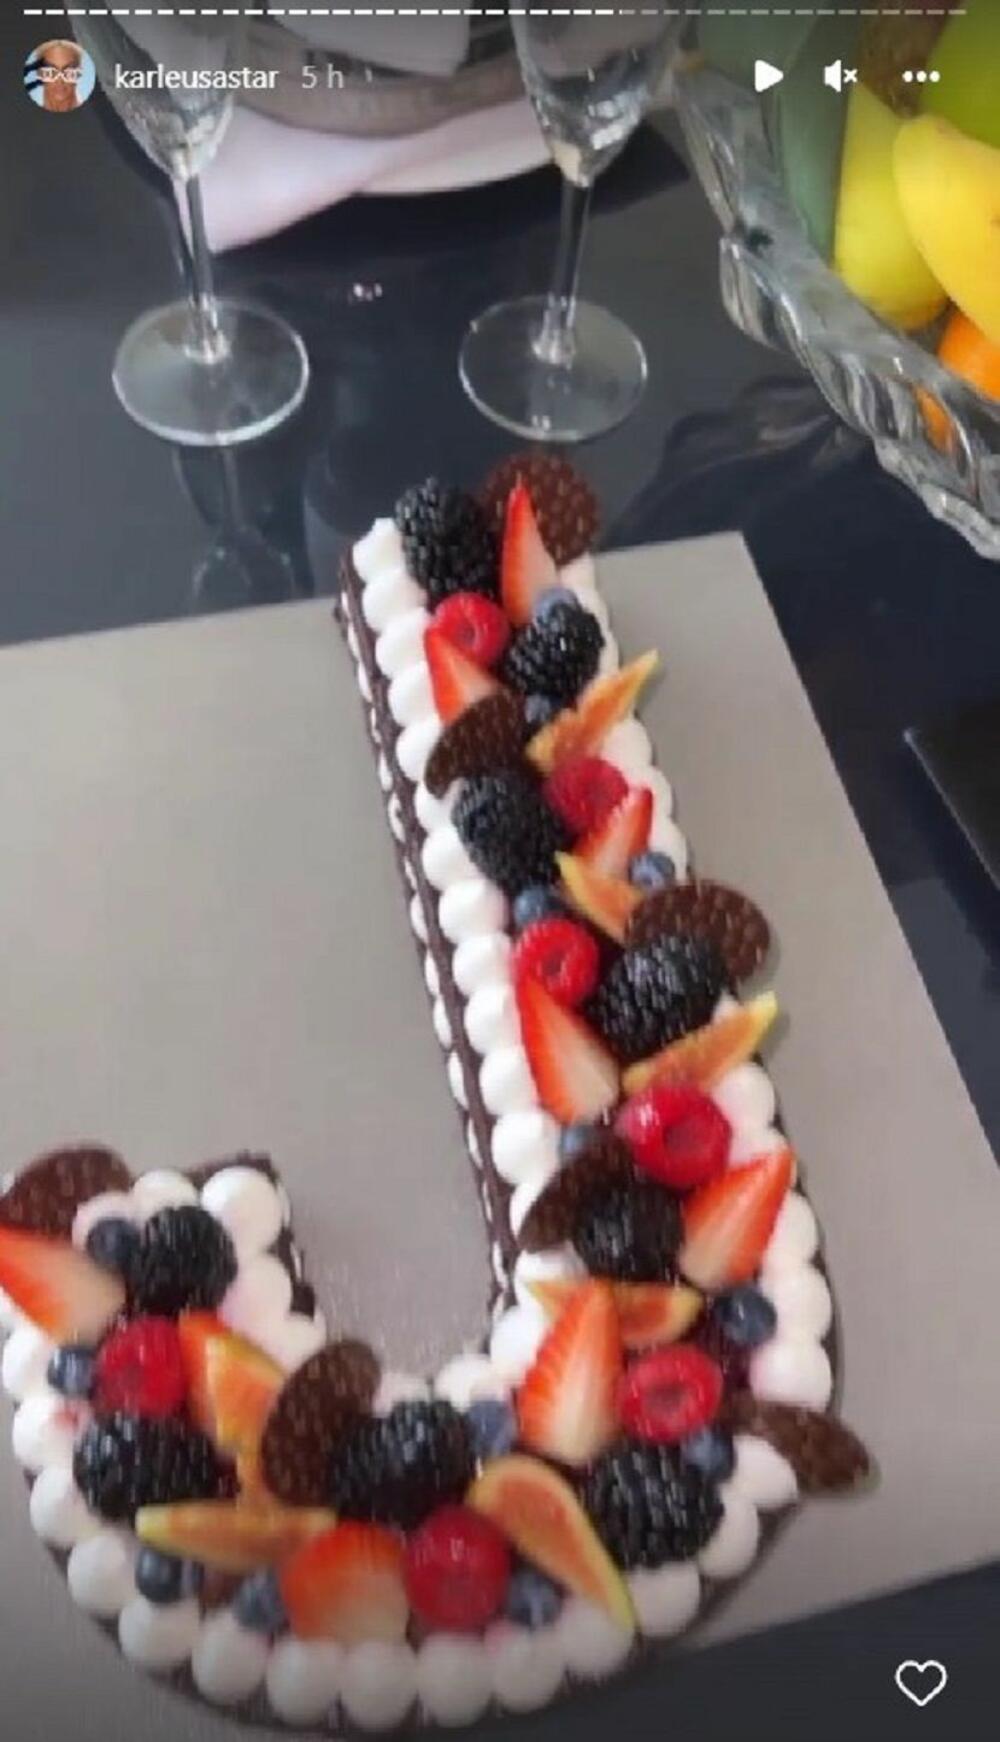 <p>Pop zvezda objavila je na Instagramu snimak dok pozira pored džinovske torte, dok na sebi ima prekratku haljinicu na rese u zlatnoj boji</p>